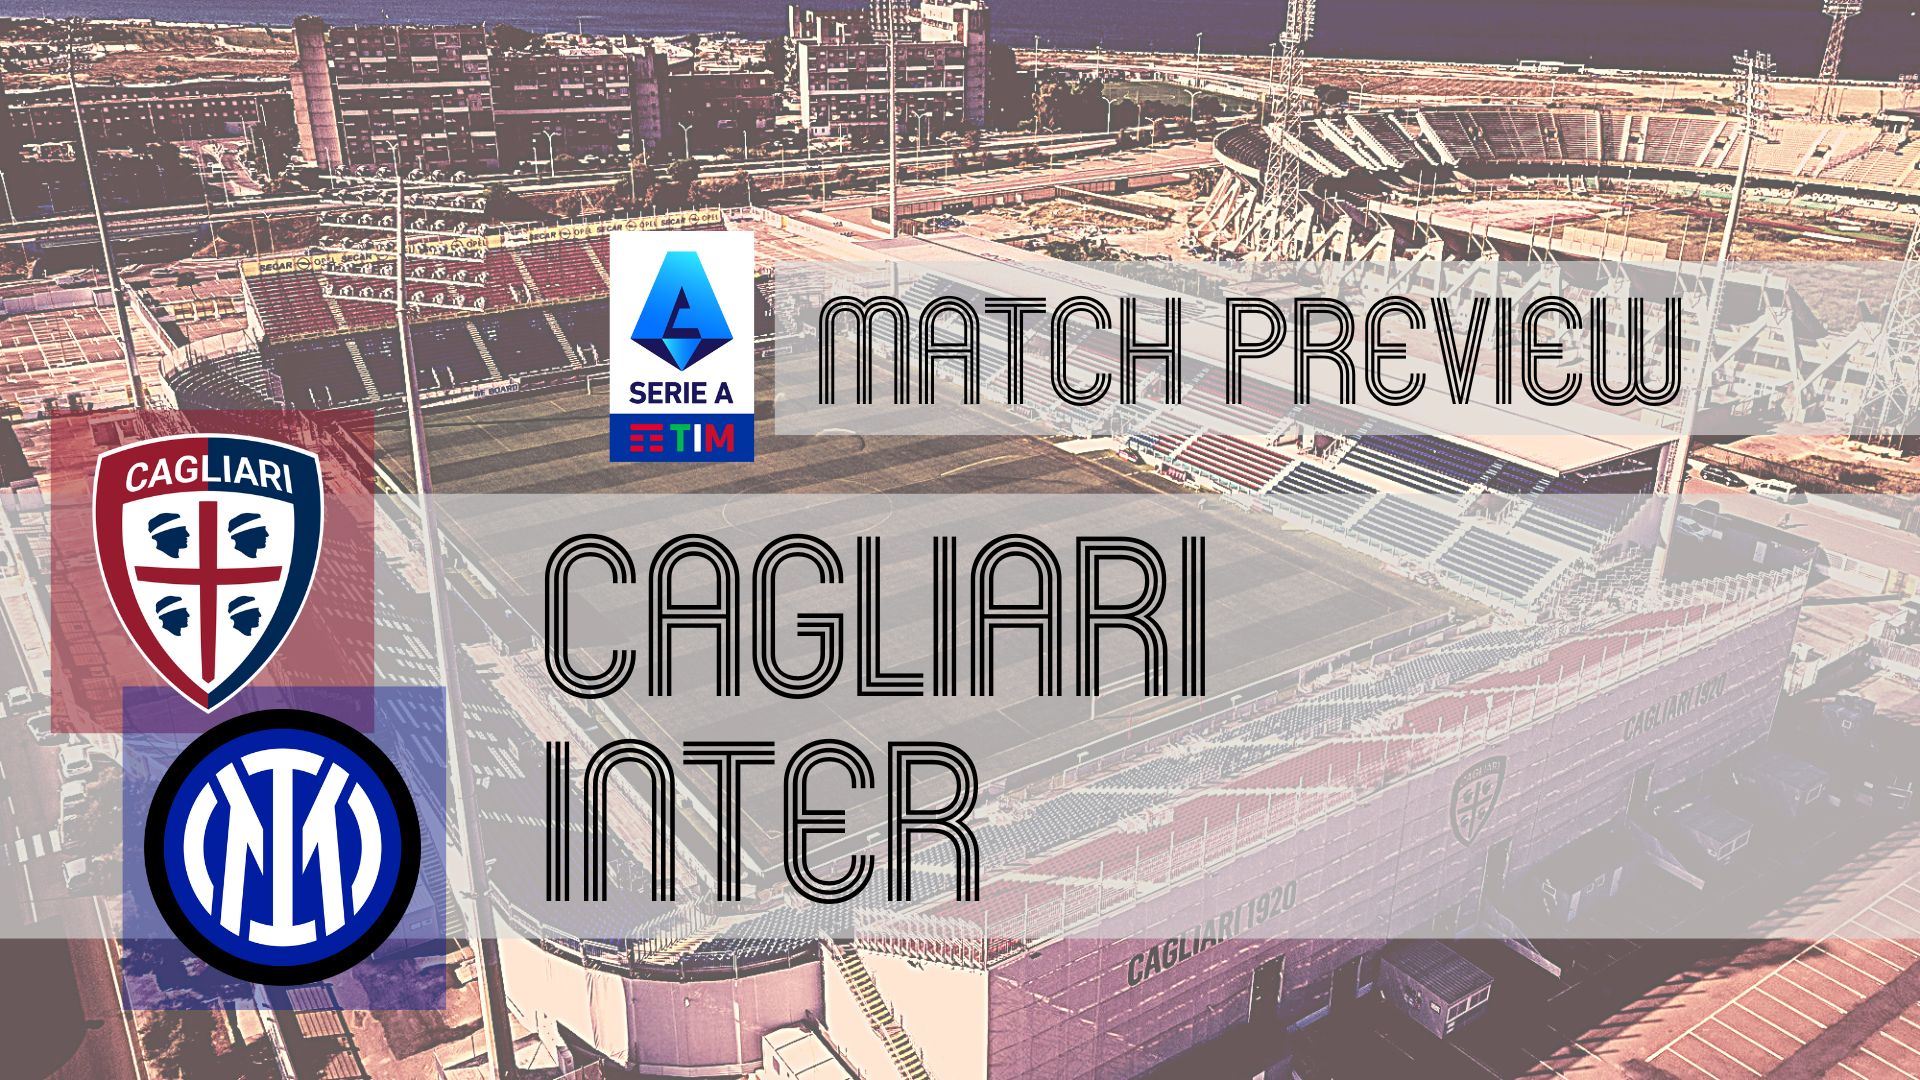 Torino - Cagliari. Match preview and prediction 